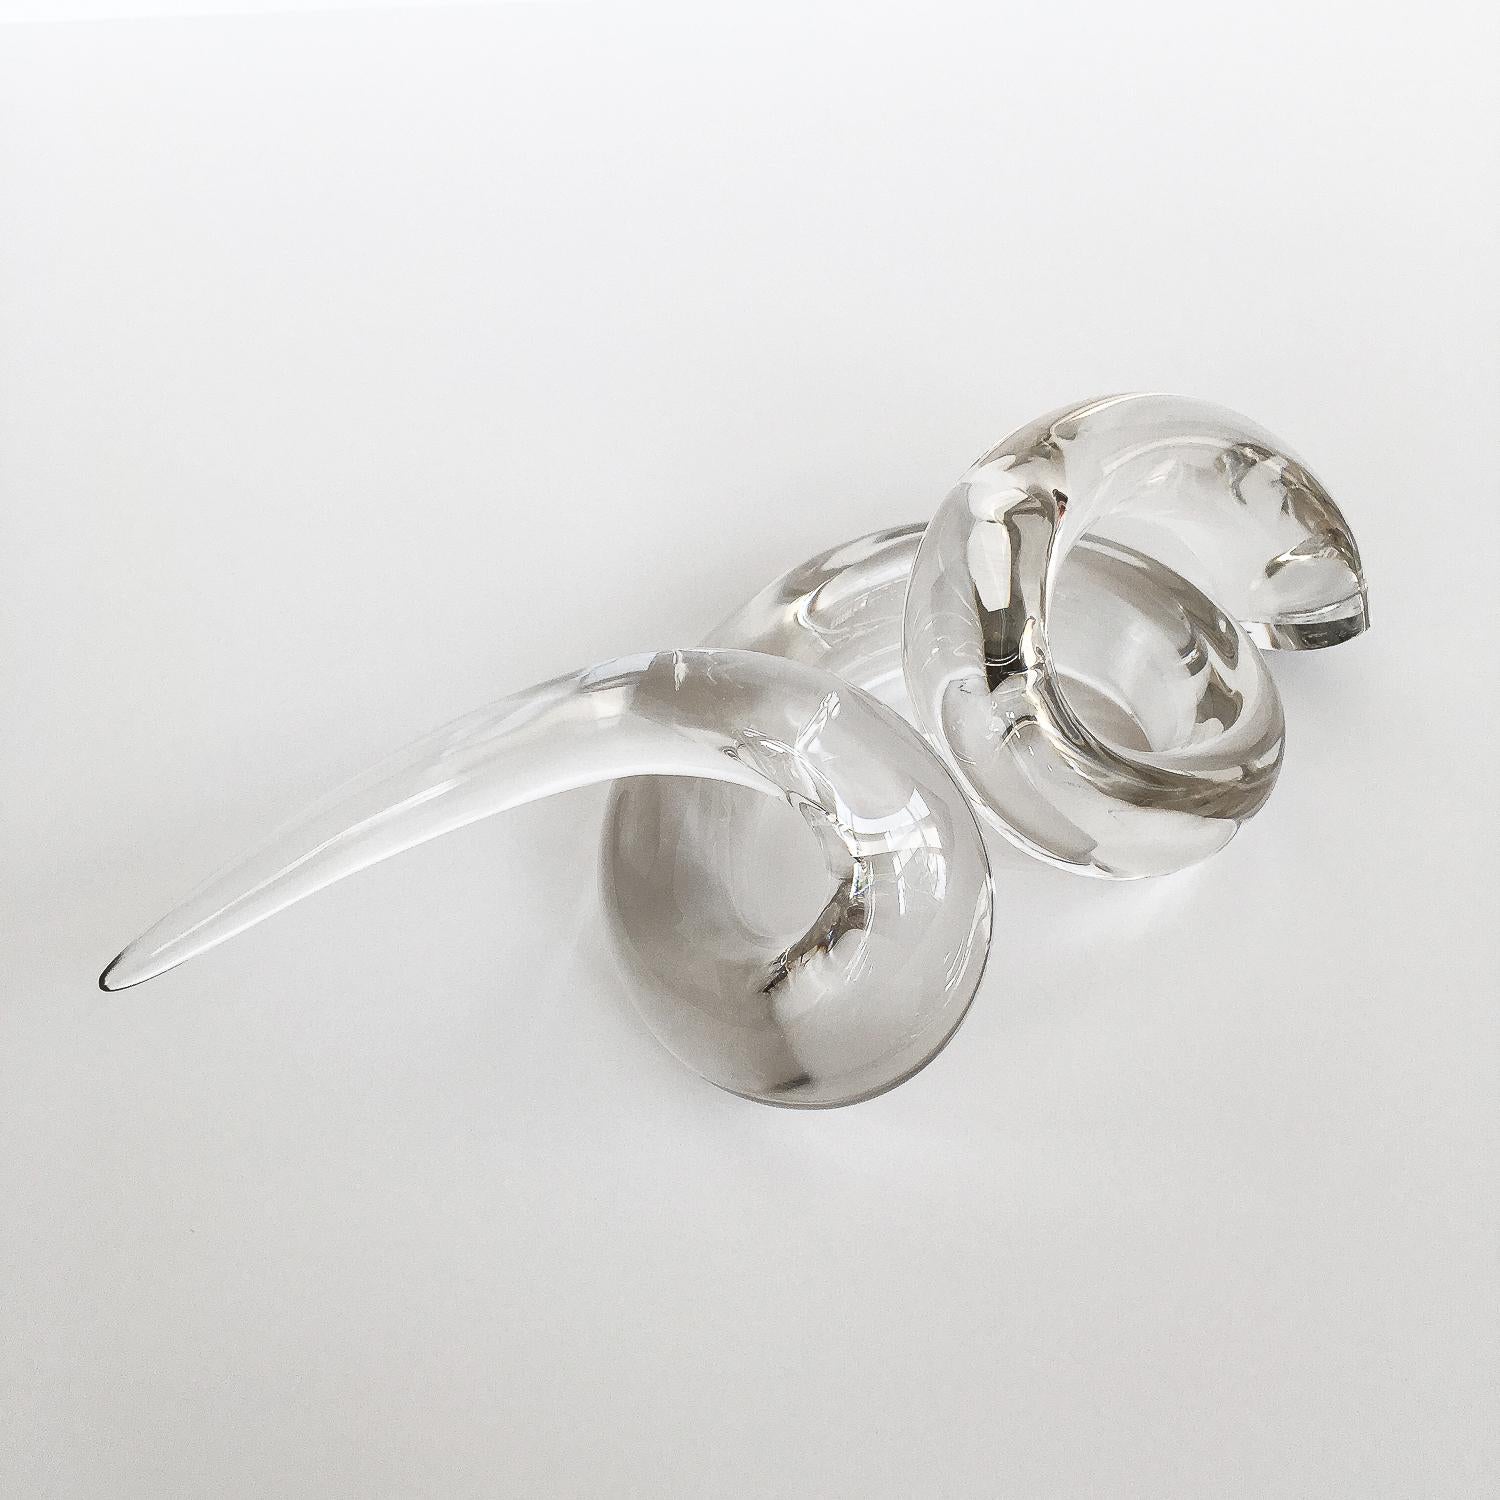 Abstract Art Glass Twist Knot Sculpture 3